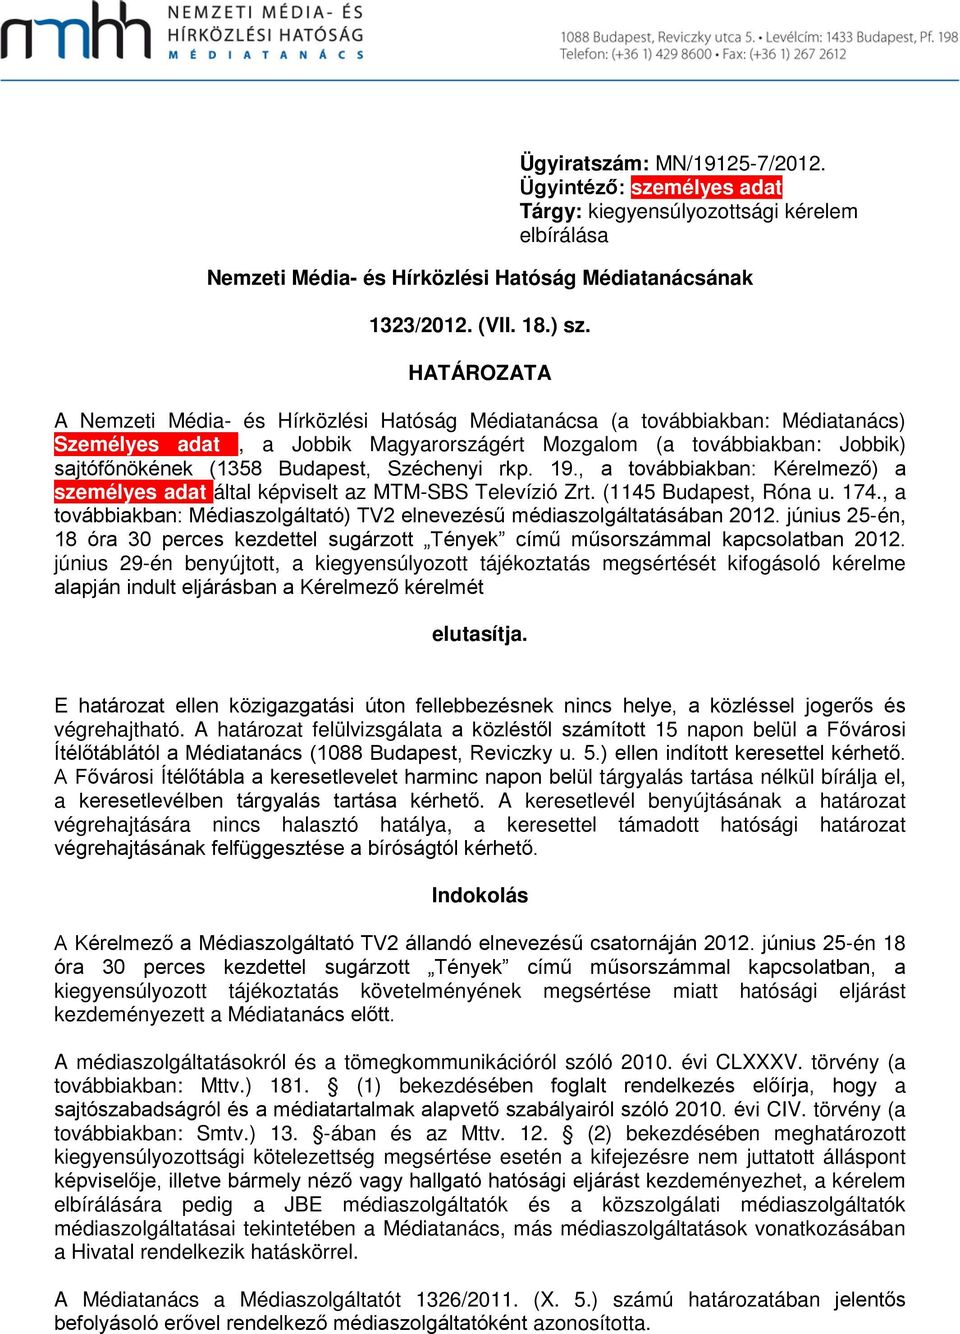 Széchenyi rkp. 19., a továbbiakban: Kérelmező) a személyes adat által képviselt az MTM-SBS Televízió Zrt. (1145 Budapest, Róna u. 174.